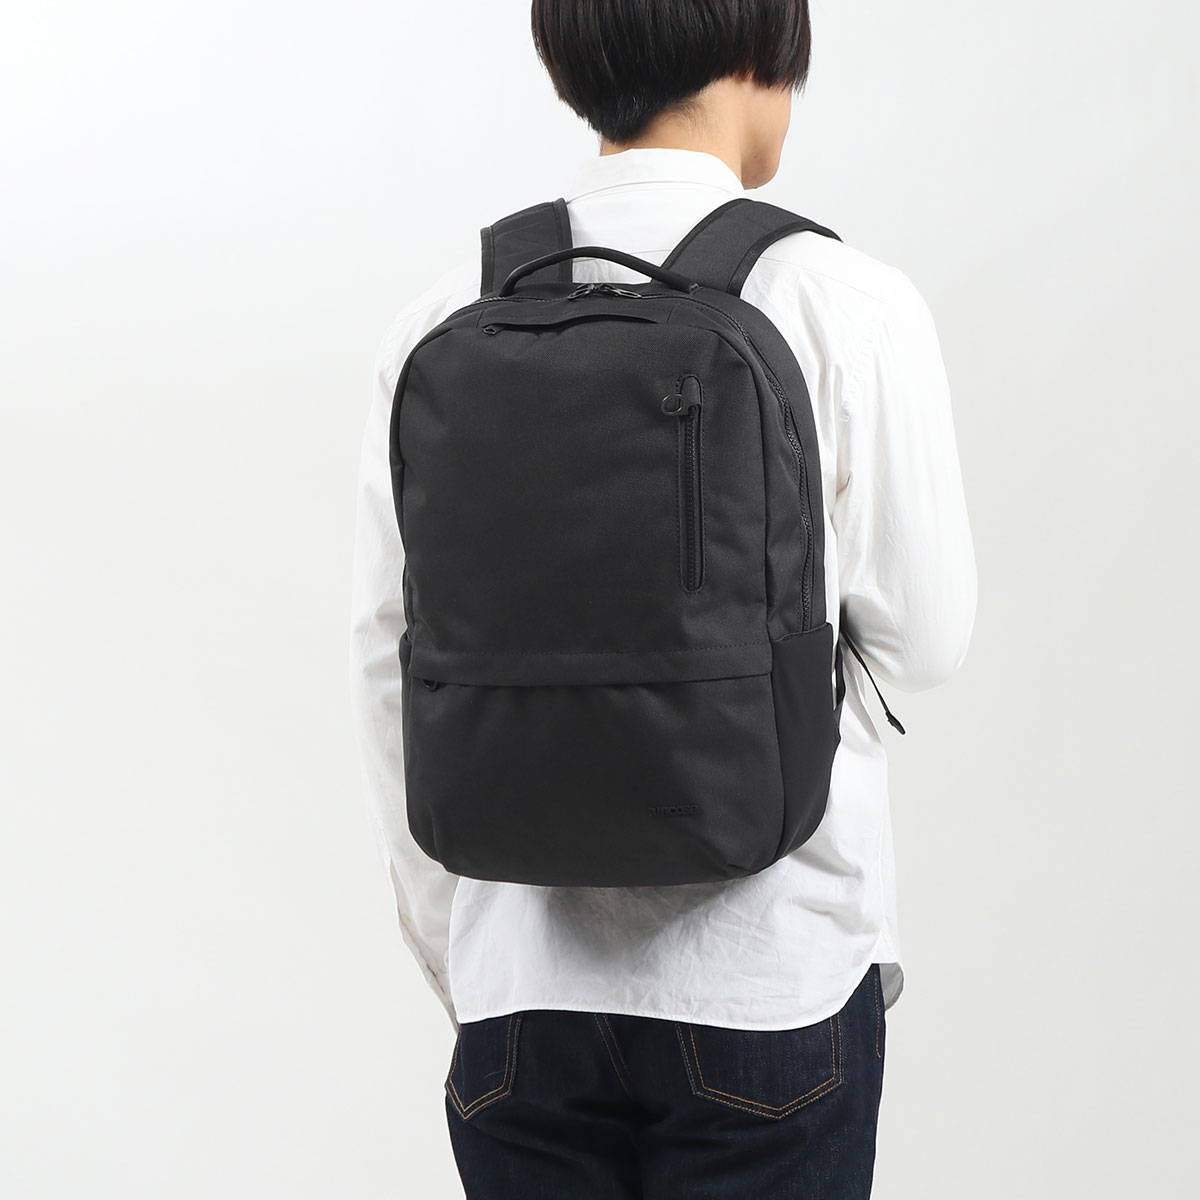 日本正規品】incase インケース Campus Compact Backpack 18.1L